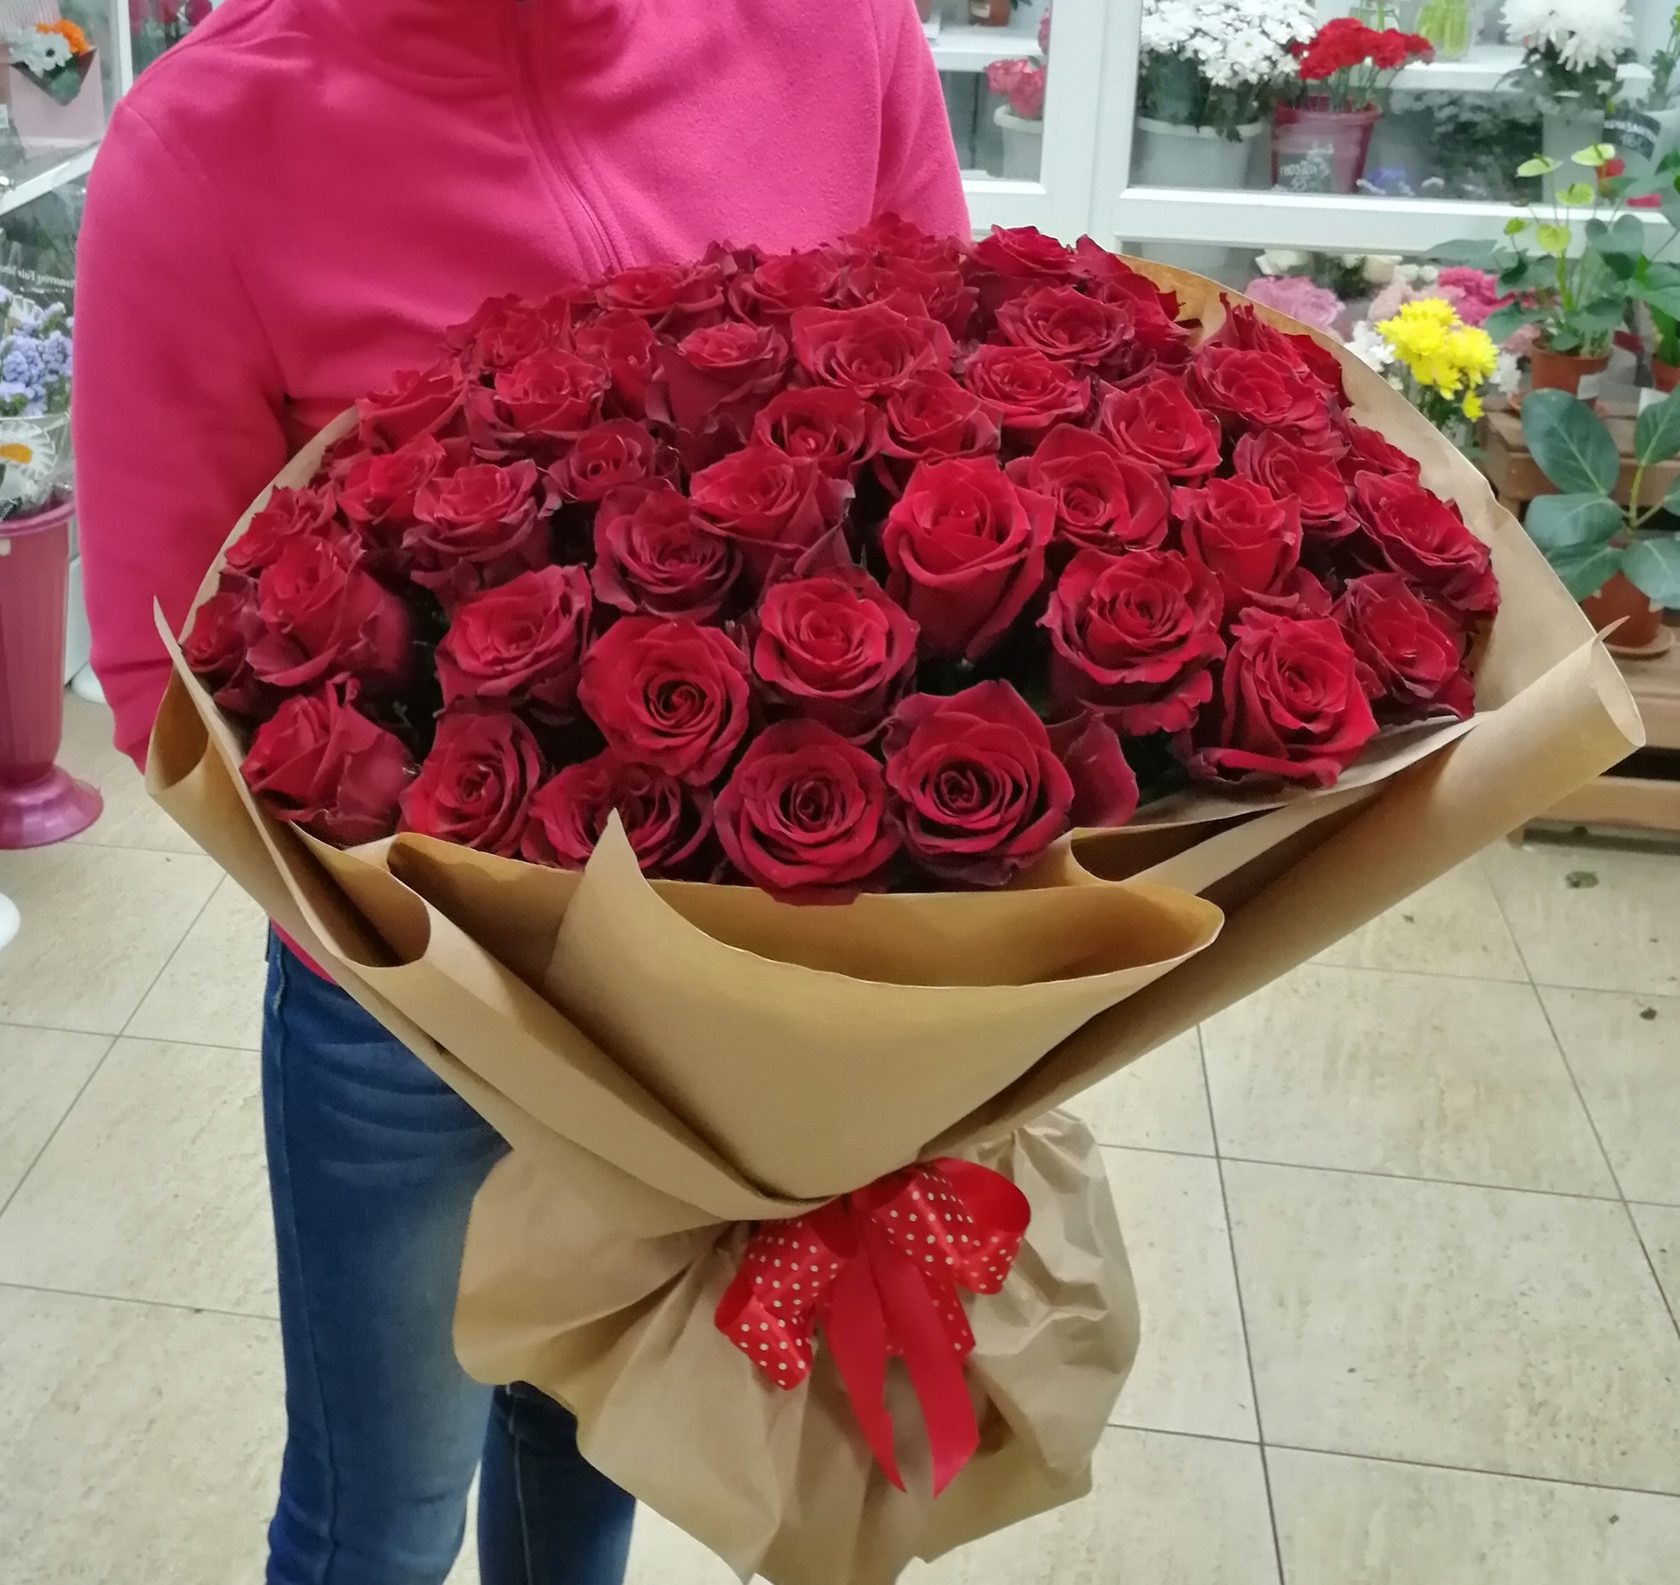 Купить розы в цветочном магазине. 51 Эксплорер.